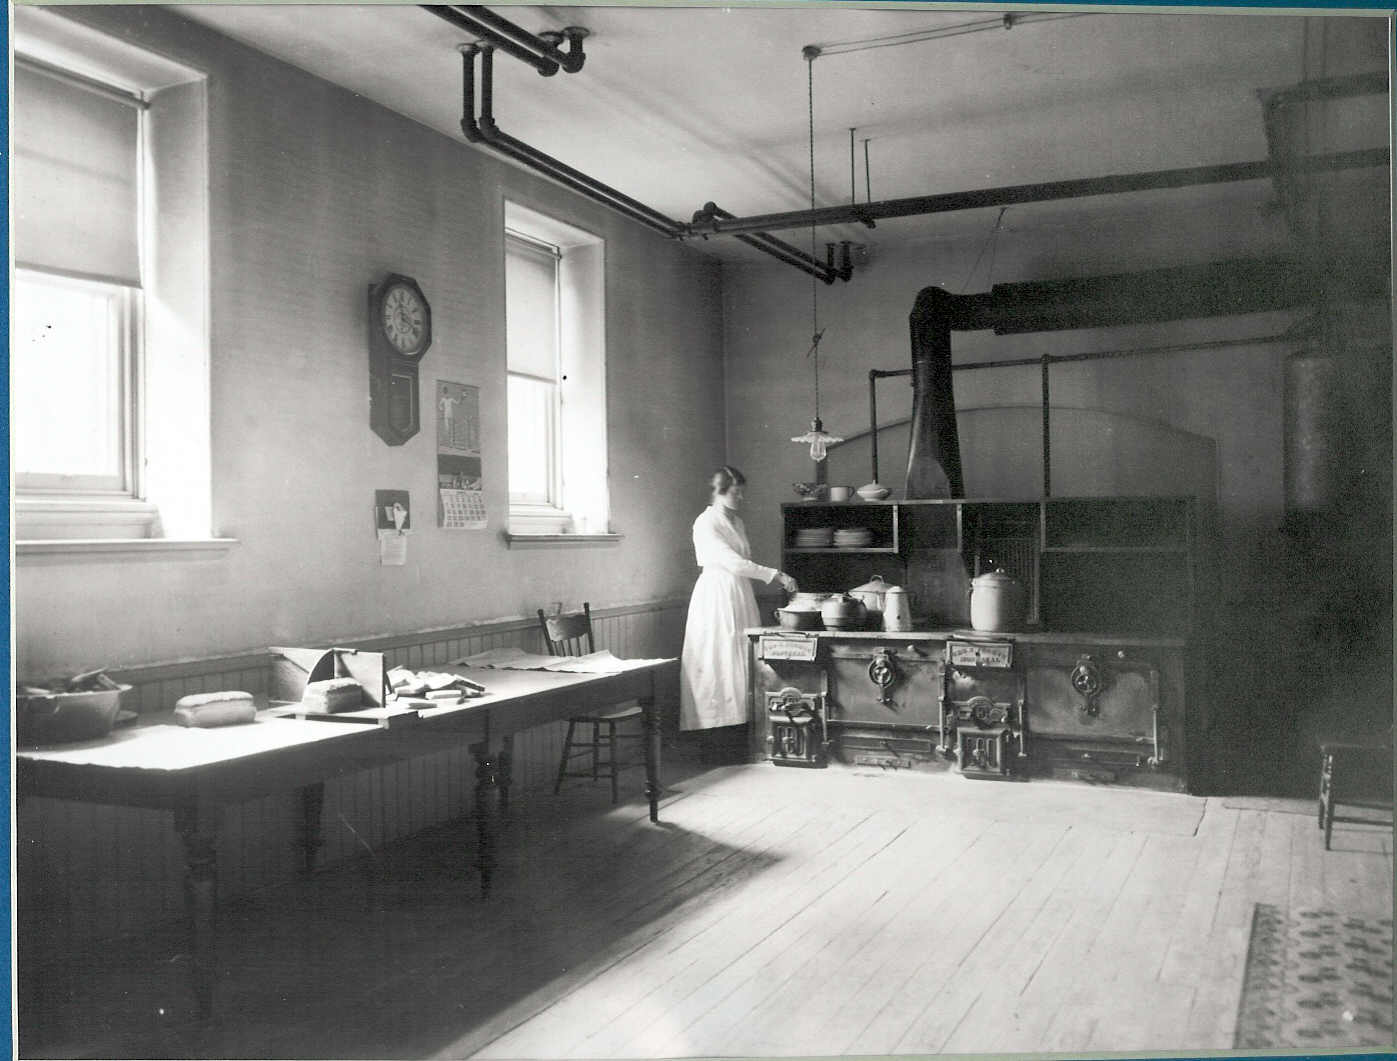 Children's Village cook in kitchen circa 1918